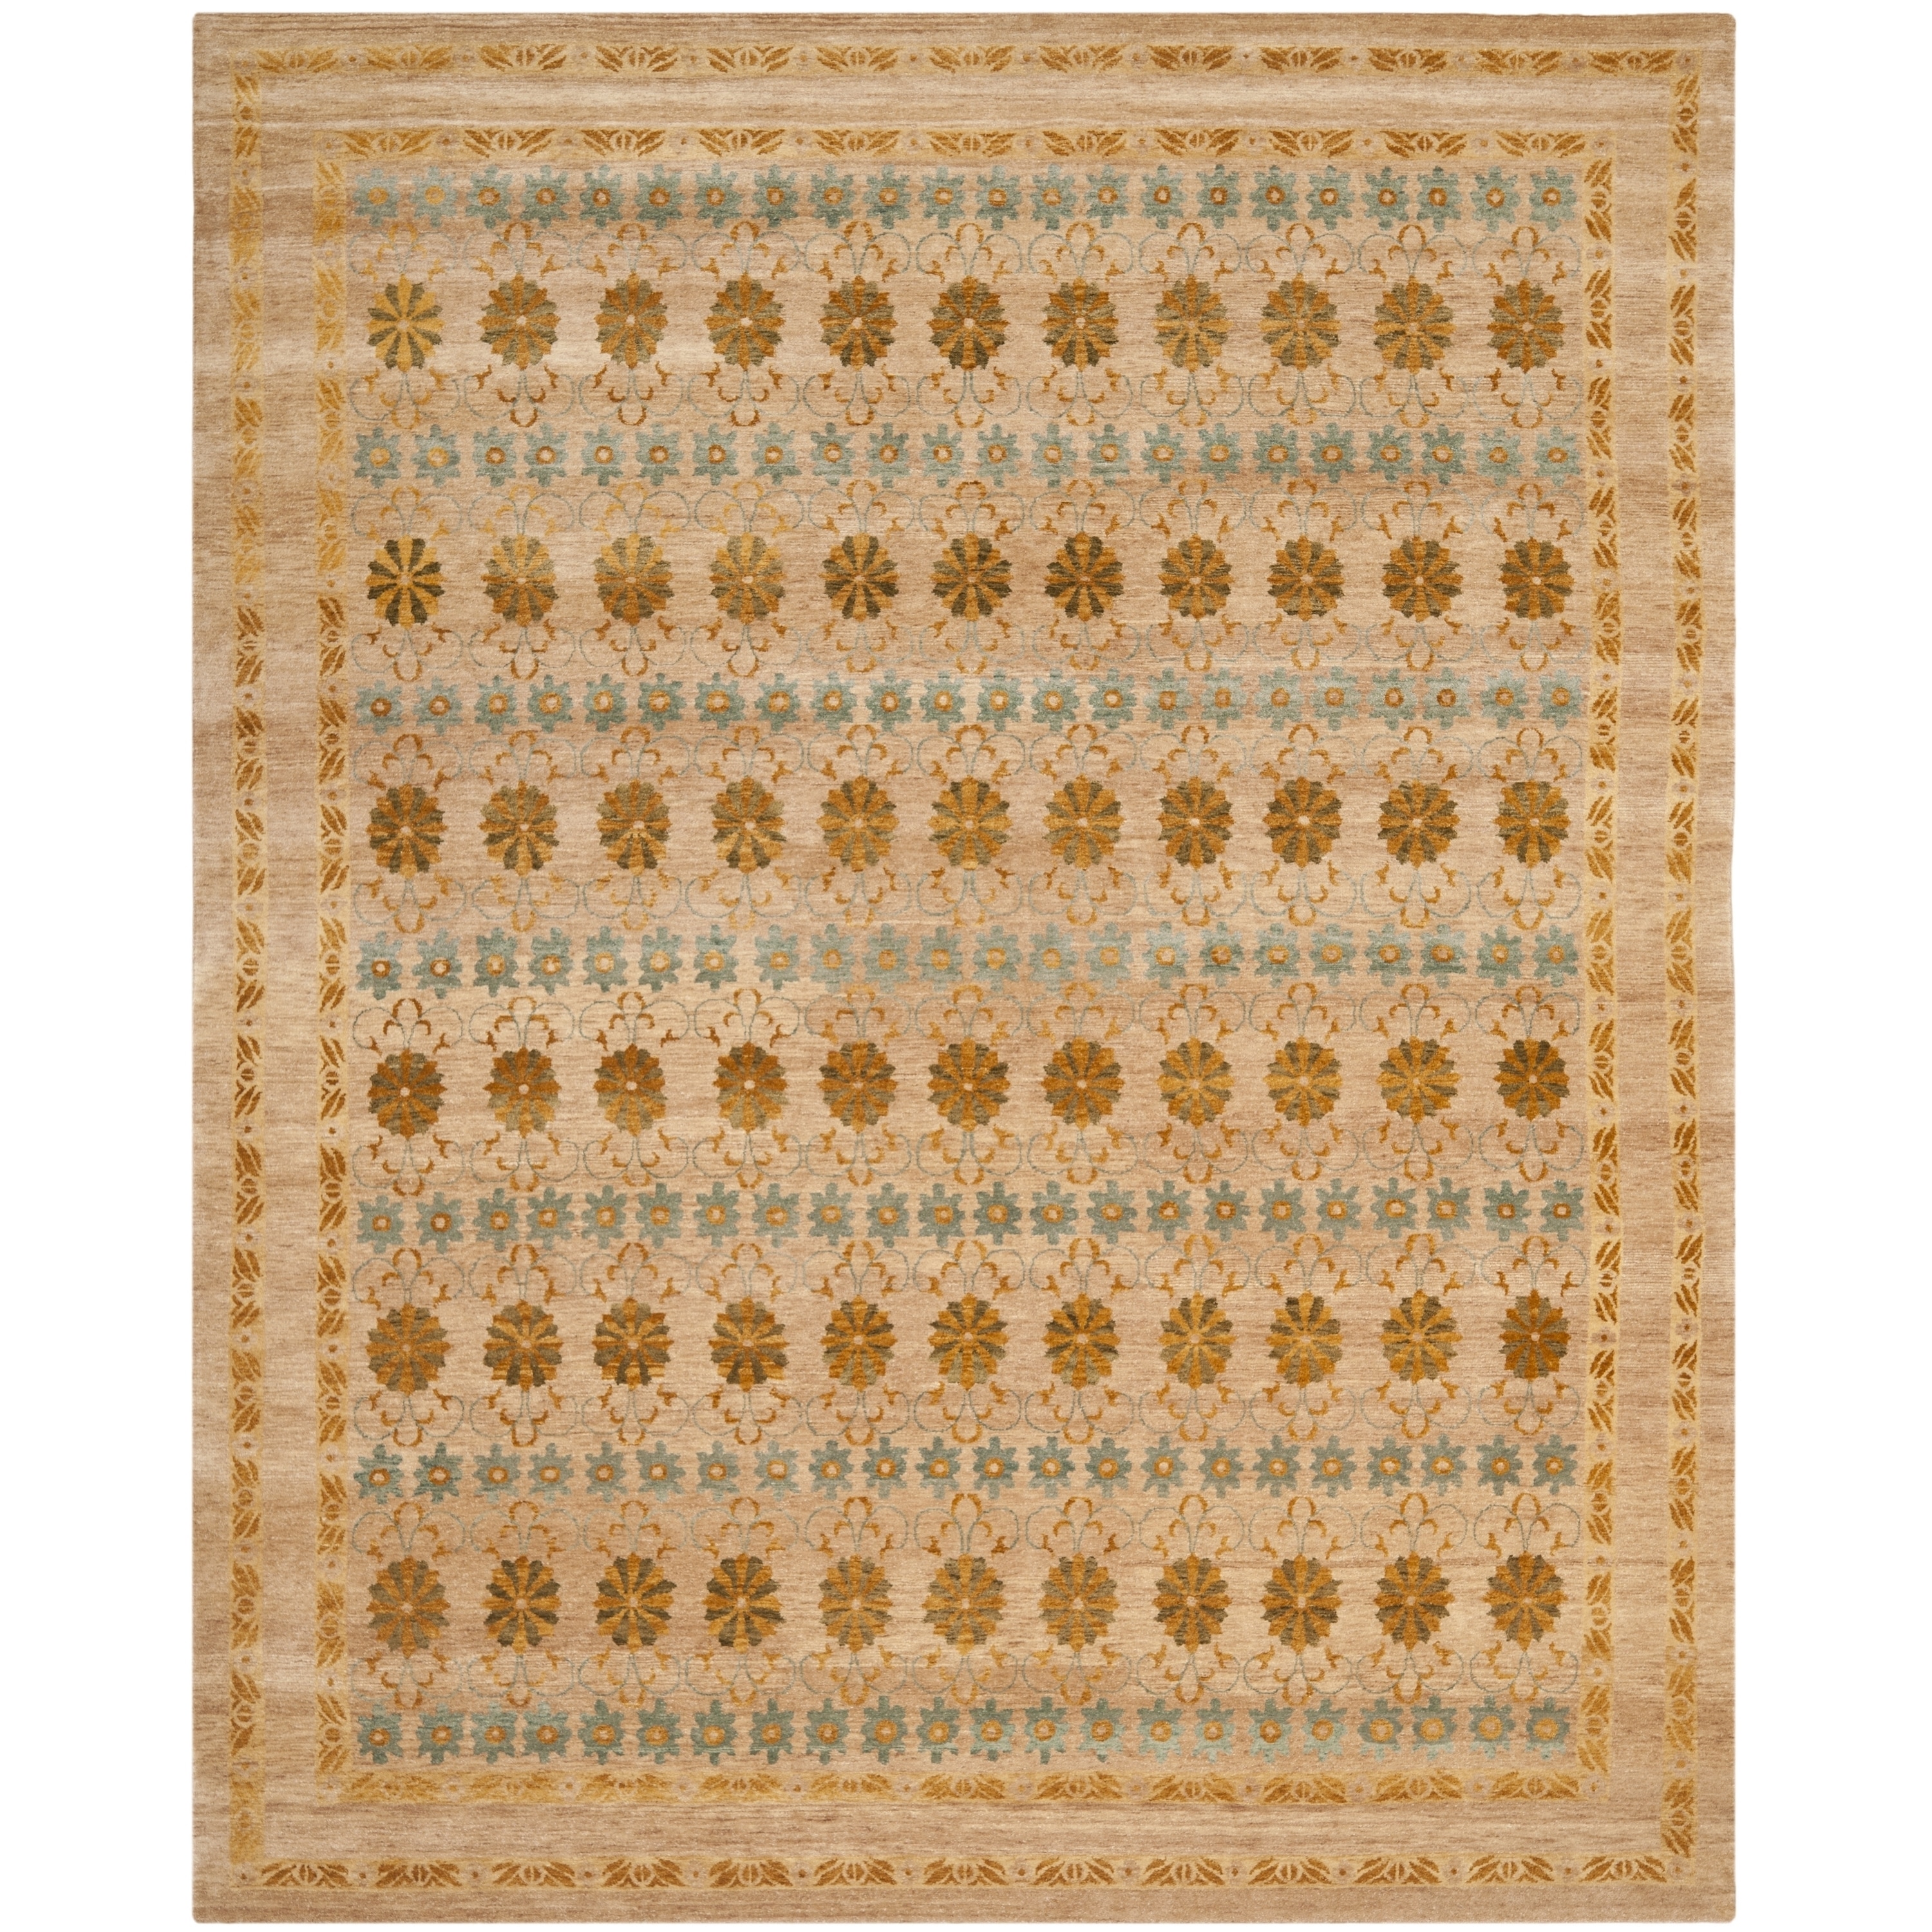 Safavieh Hand knotted Marrakech Gold/ Light Blue Wool Rug (9 X 12)